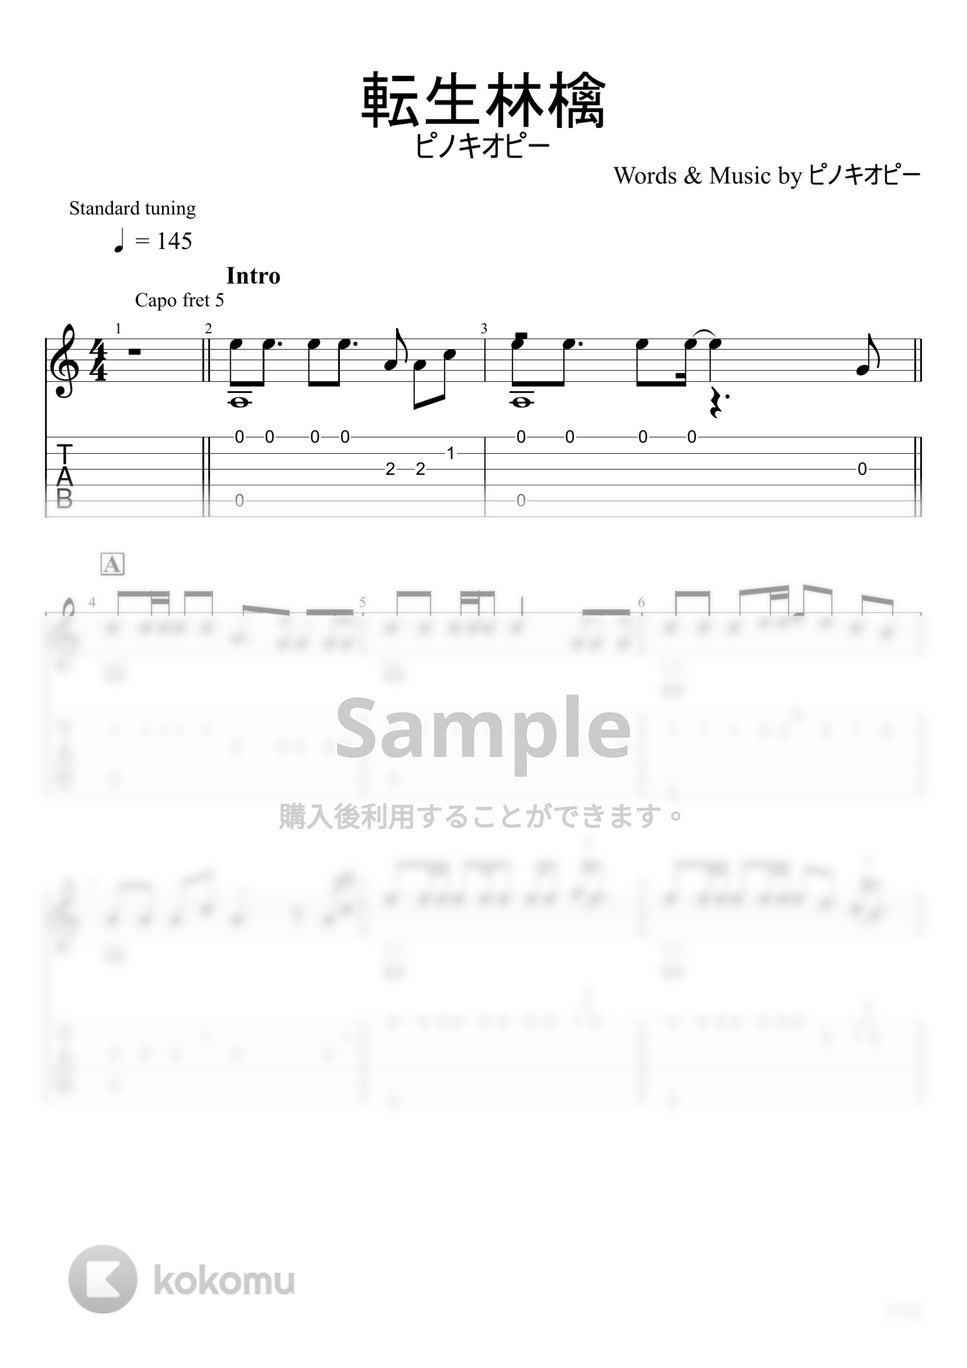 ピノキオピー - 転生林檎 (ソロギター) by u3danchou